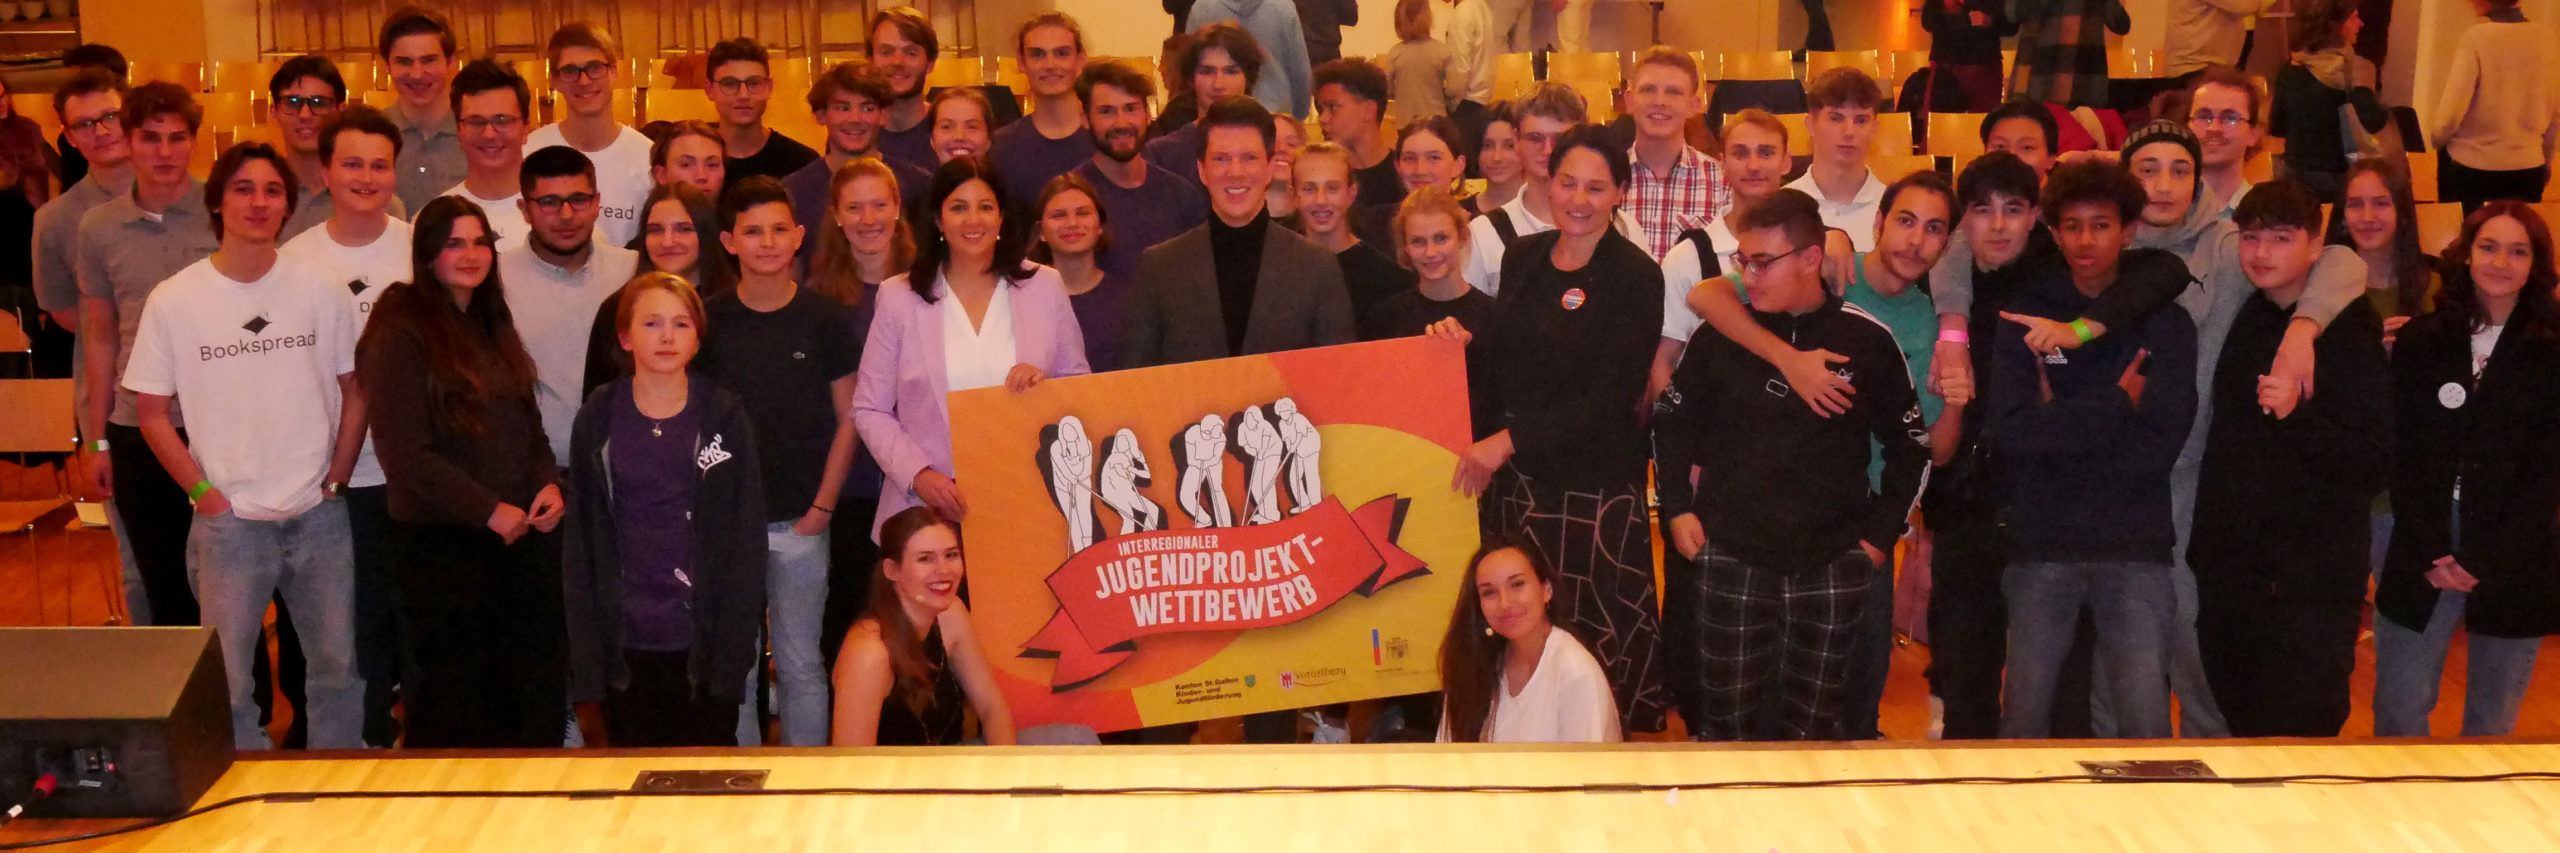 aha-backstage #39: Liechtenstein gewinnt Jugendprojekt-Wettbewerb